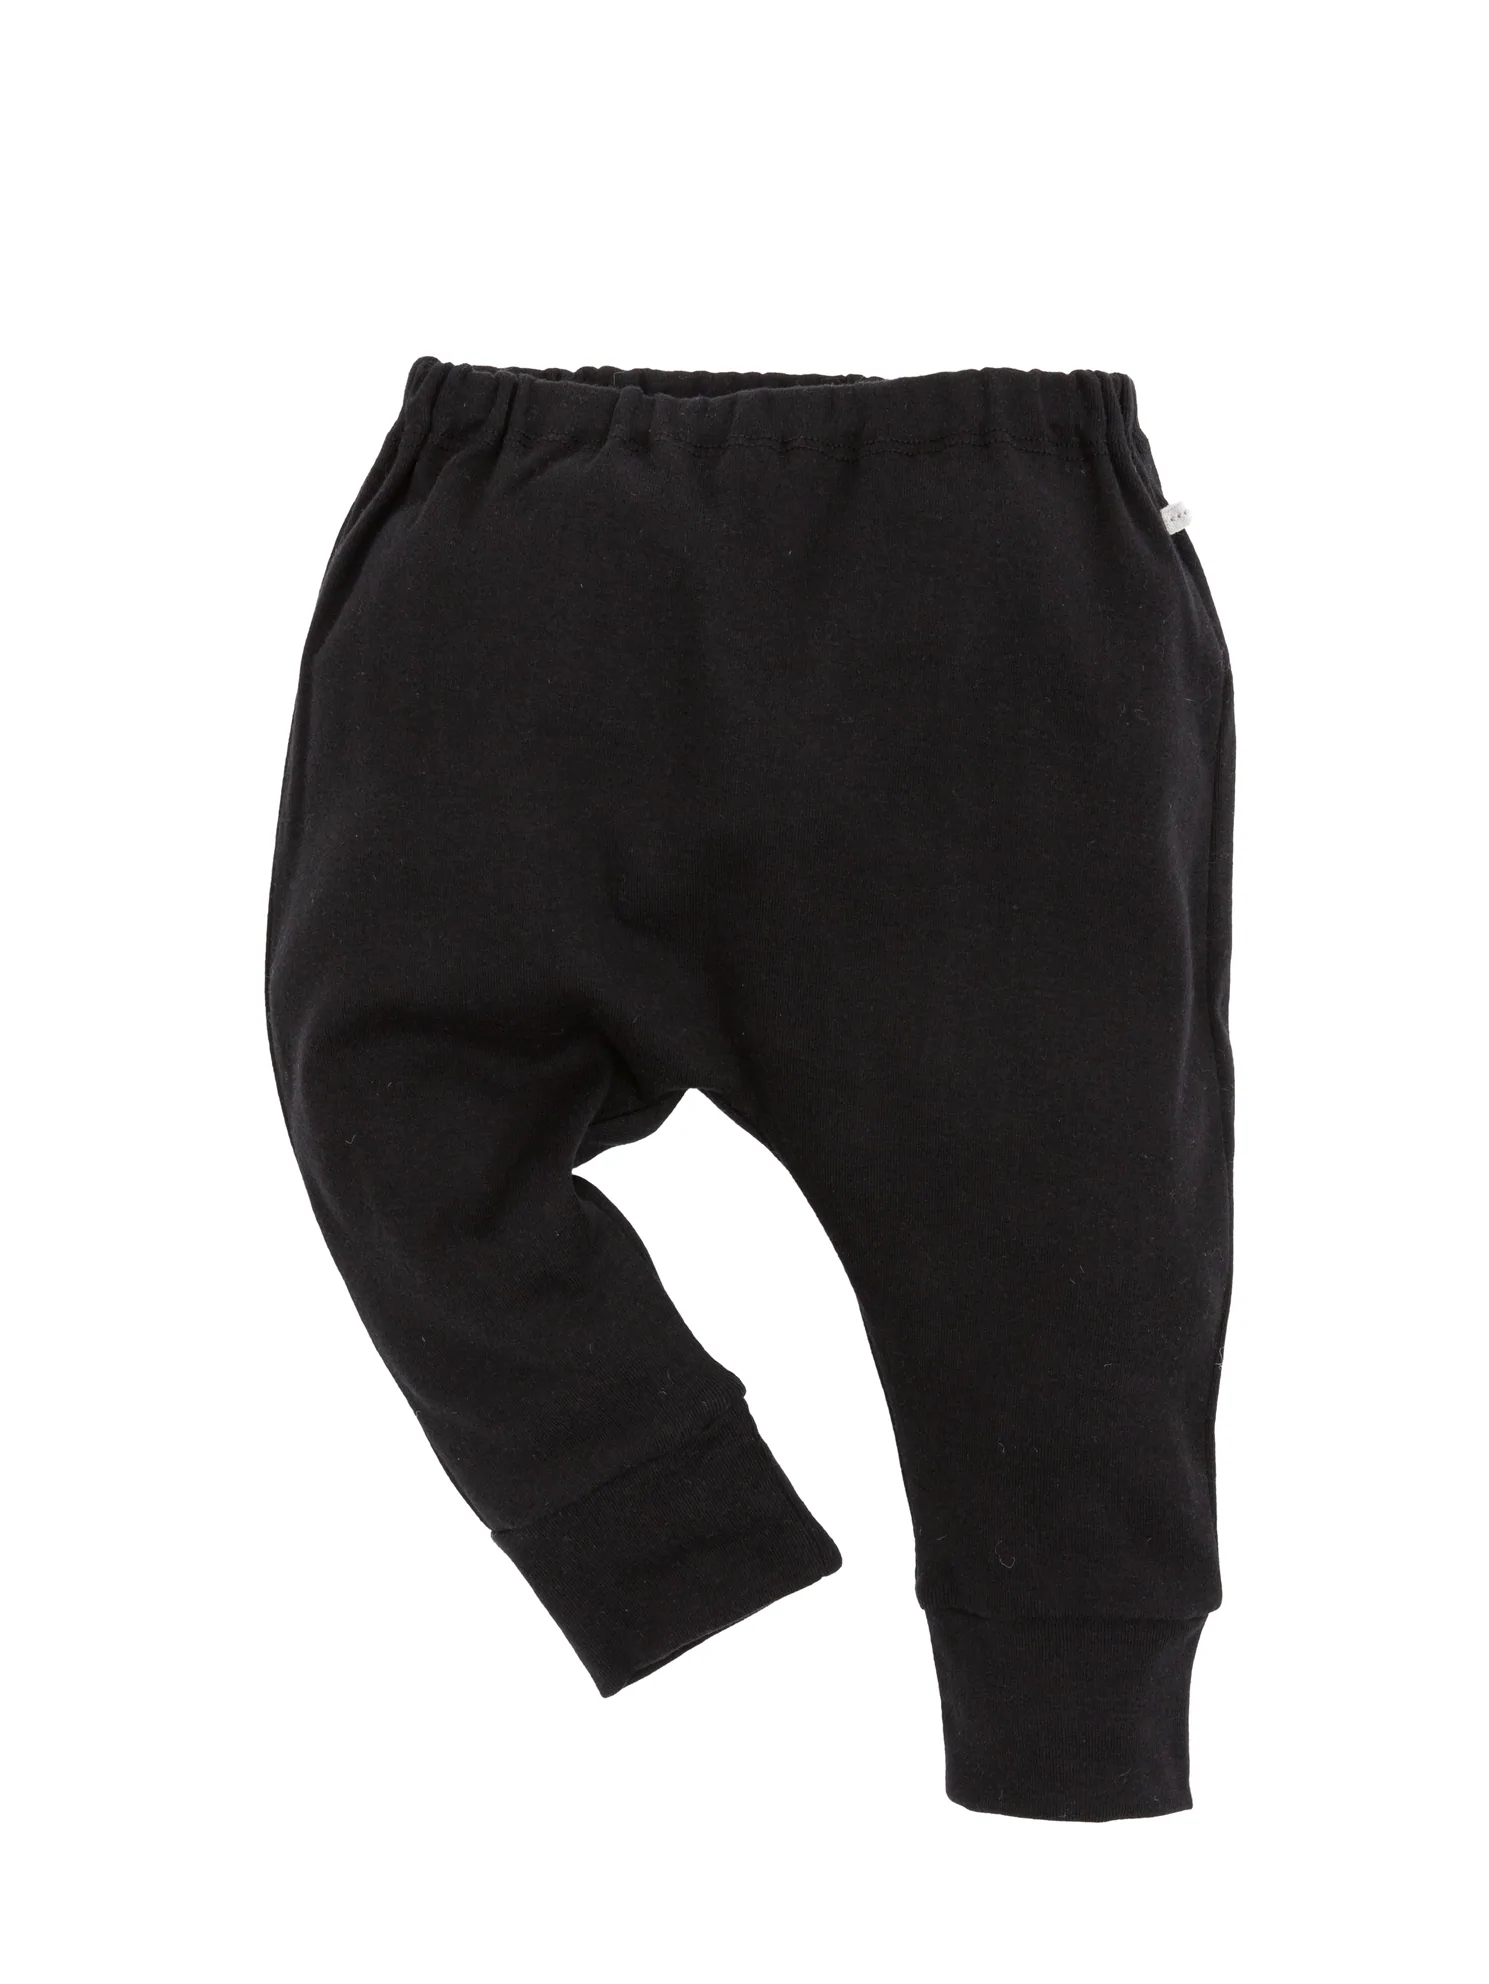 Assorted set of 10 Kids Harem Pants – Sure Design Wholesale